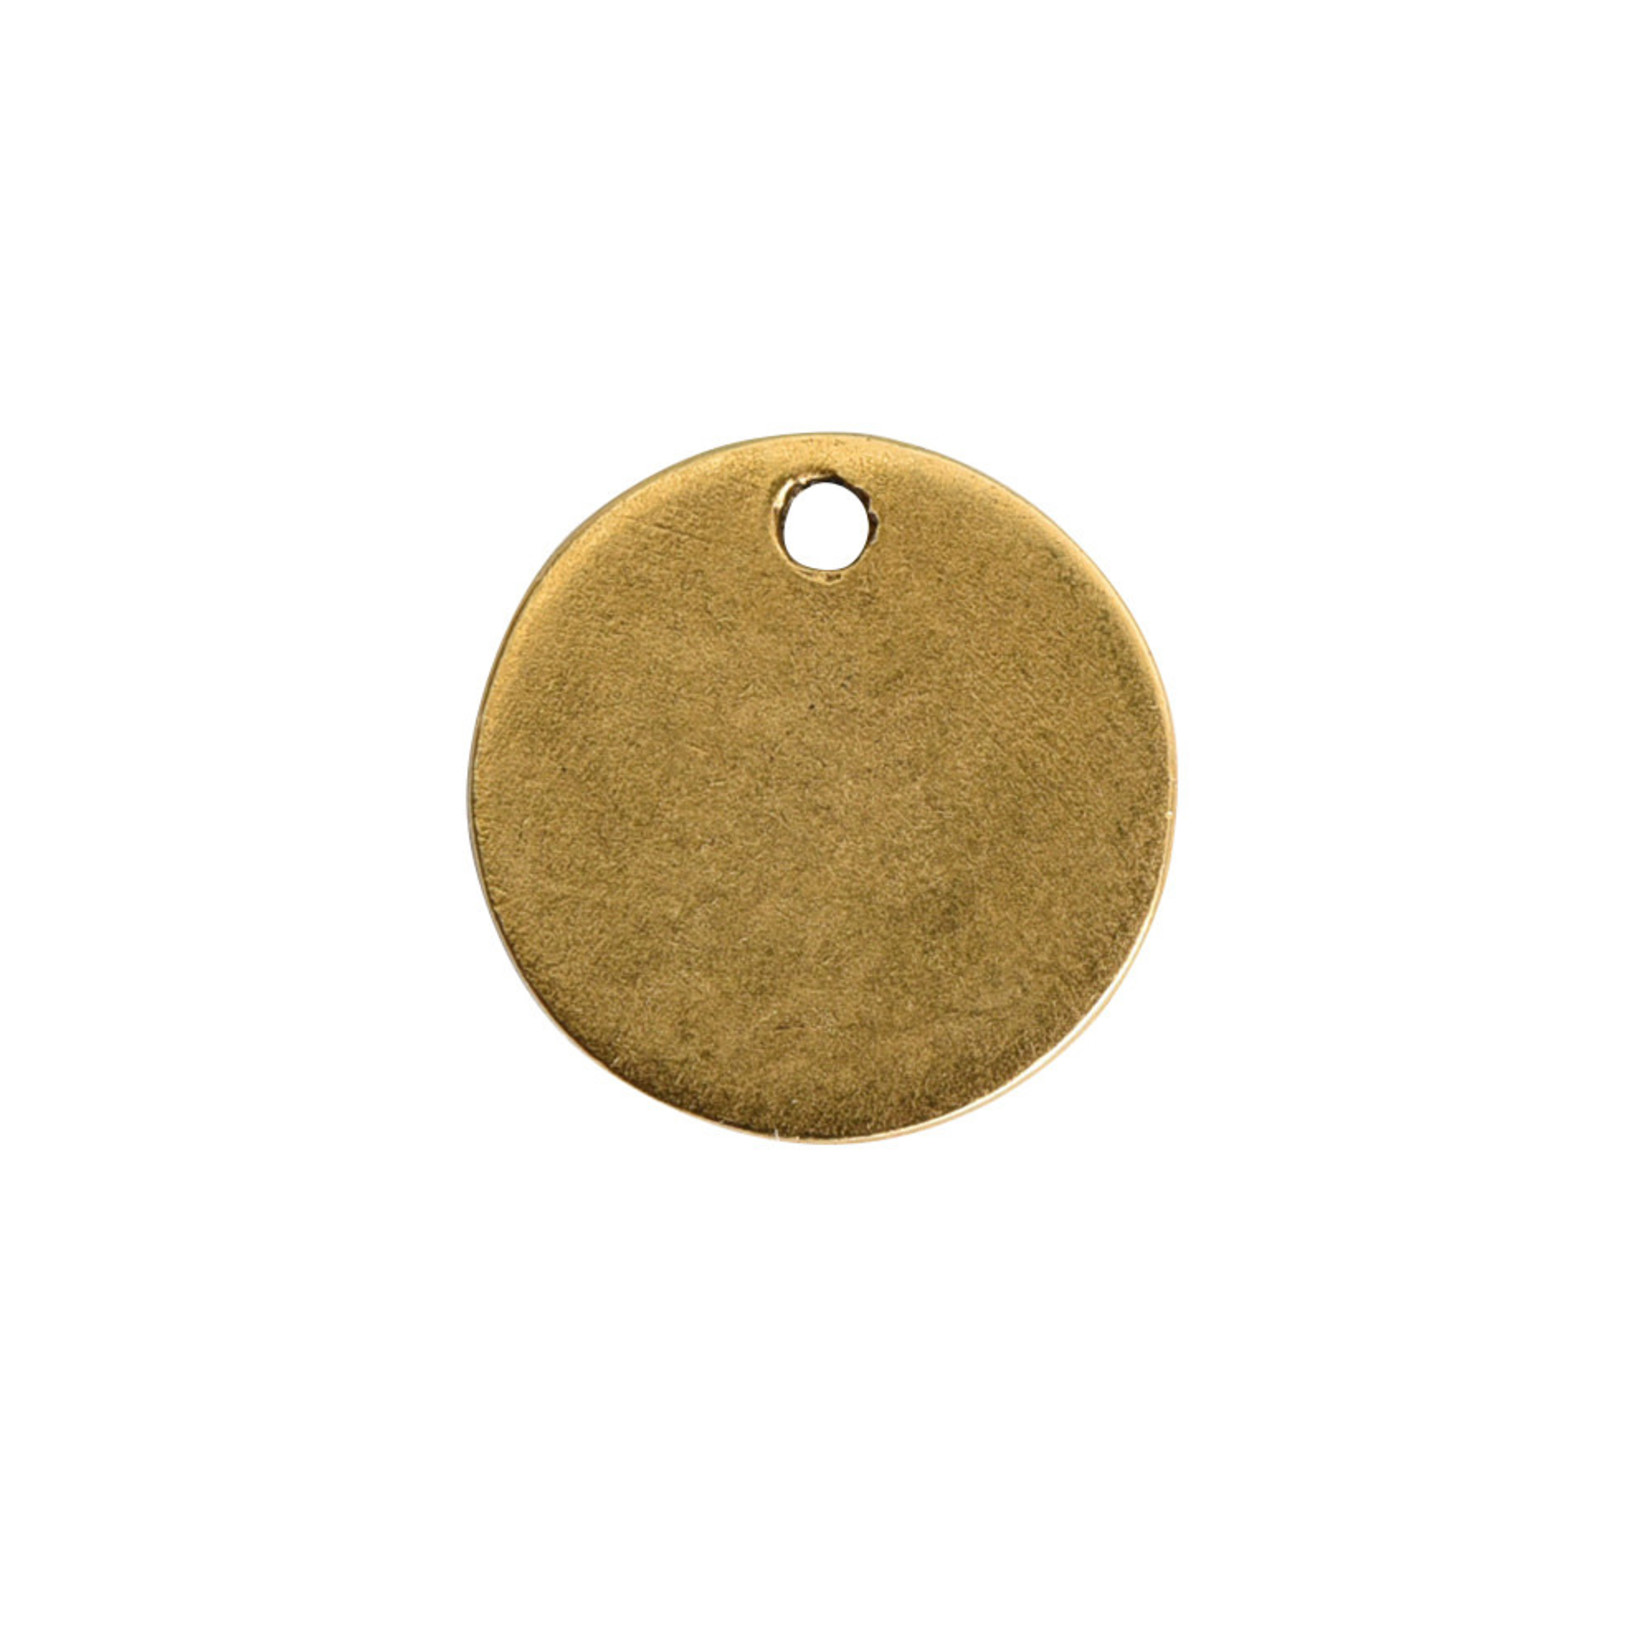 Nunn Design Nunn Design Antique Gold Flat Tag Mini Circle